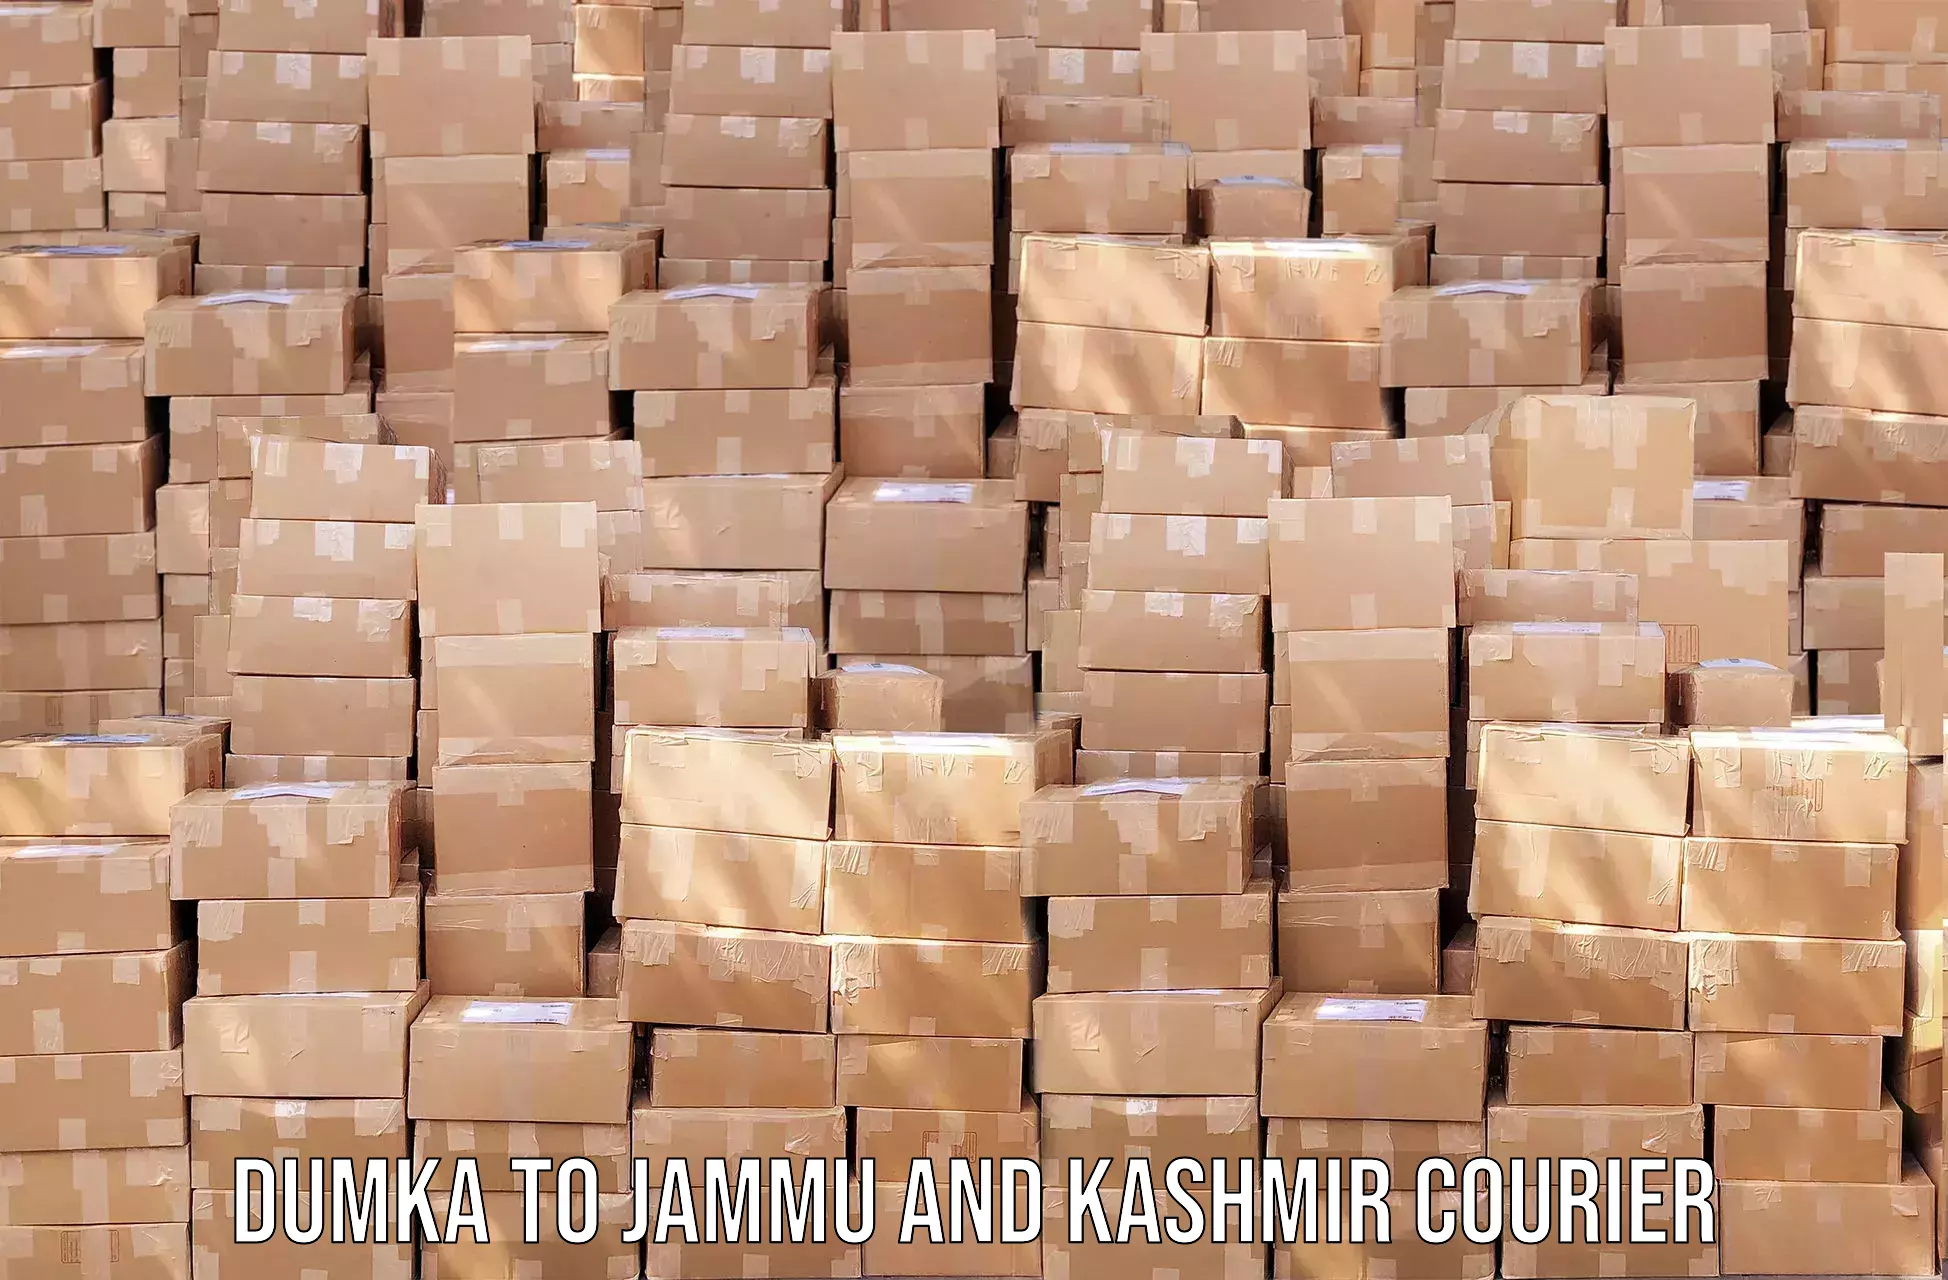 Affordable parcel service Dumka to Jammu and Kashmir